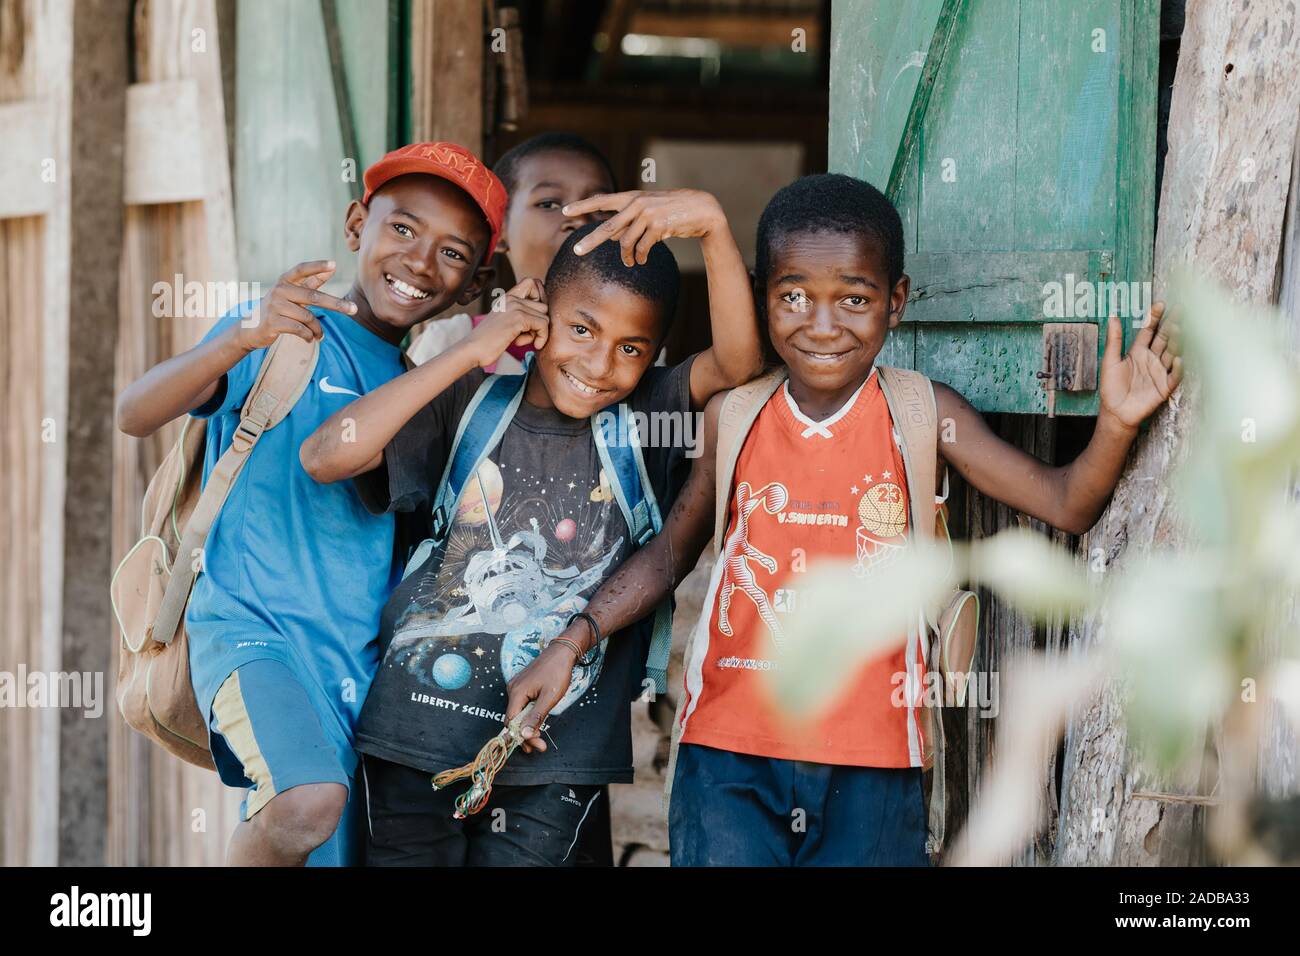 Madagaskar Oktober 18.2016 Gruppe von Glücklich und lächelnden jungen Jungen, Grundschule Student. Maroantsetra Oktober 18. 2016, Madagaskar. Stockfoto